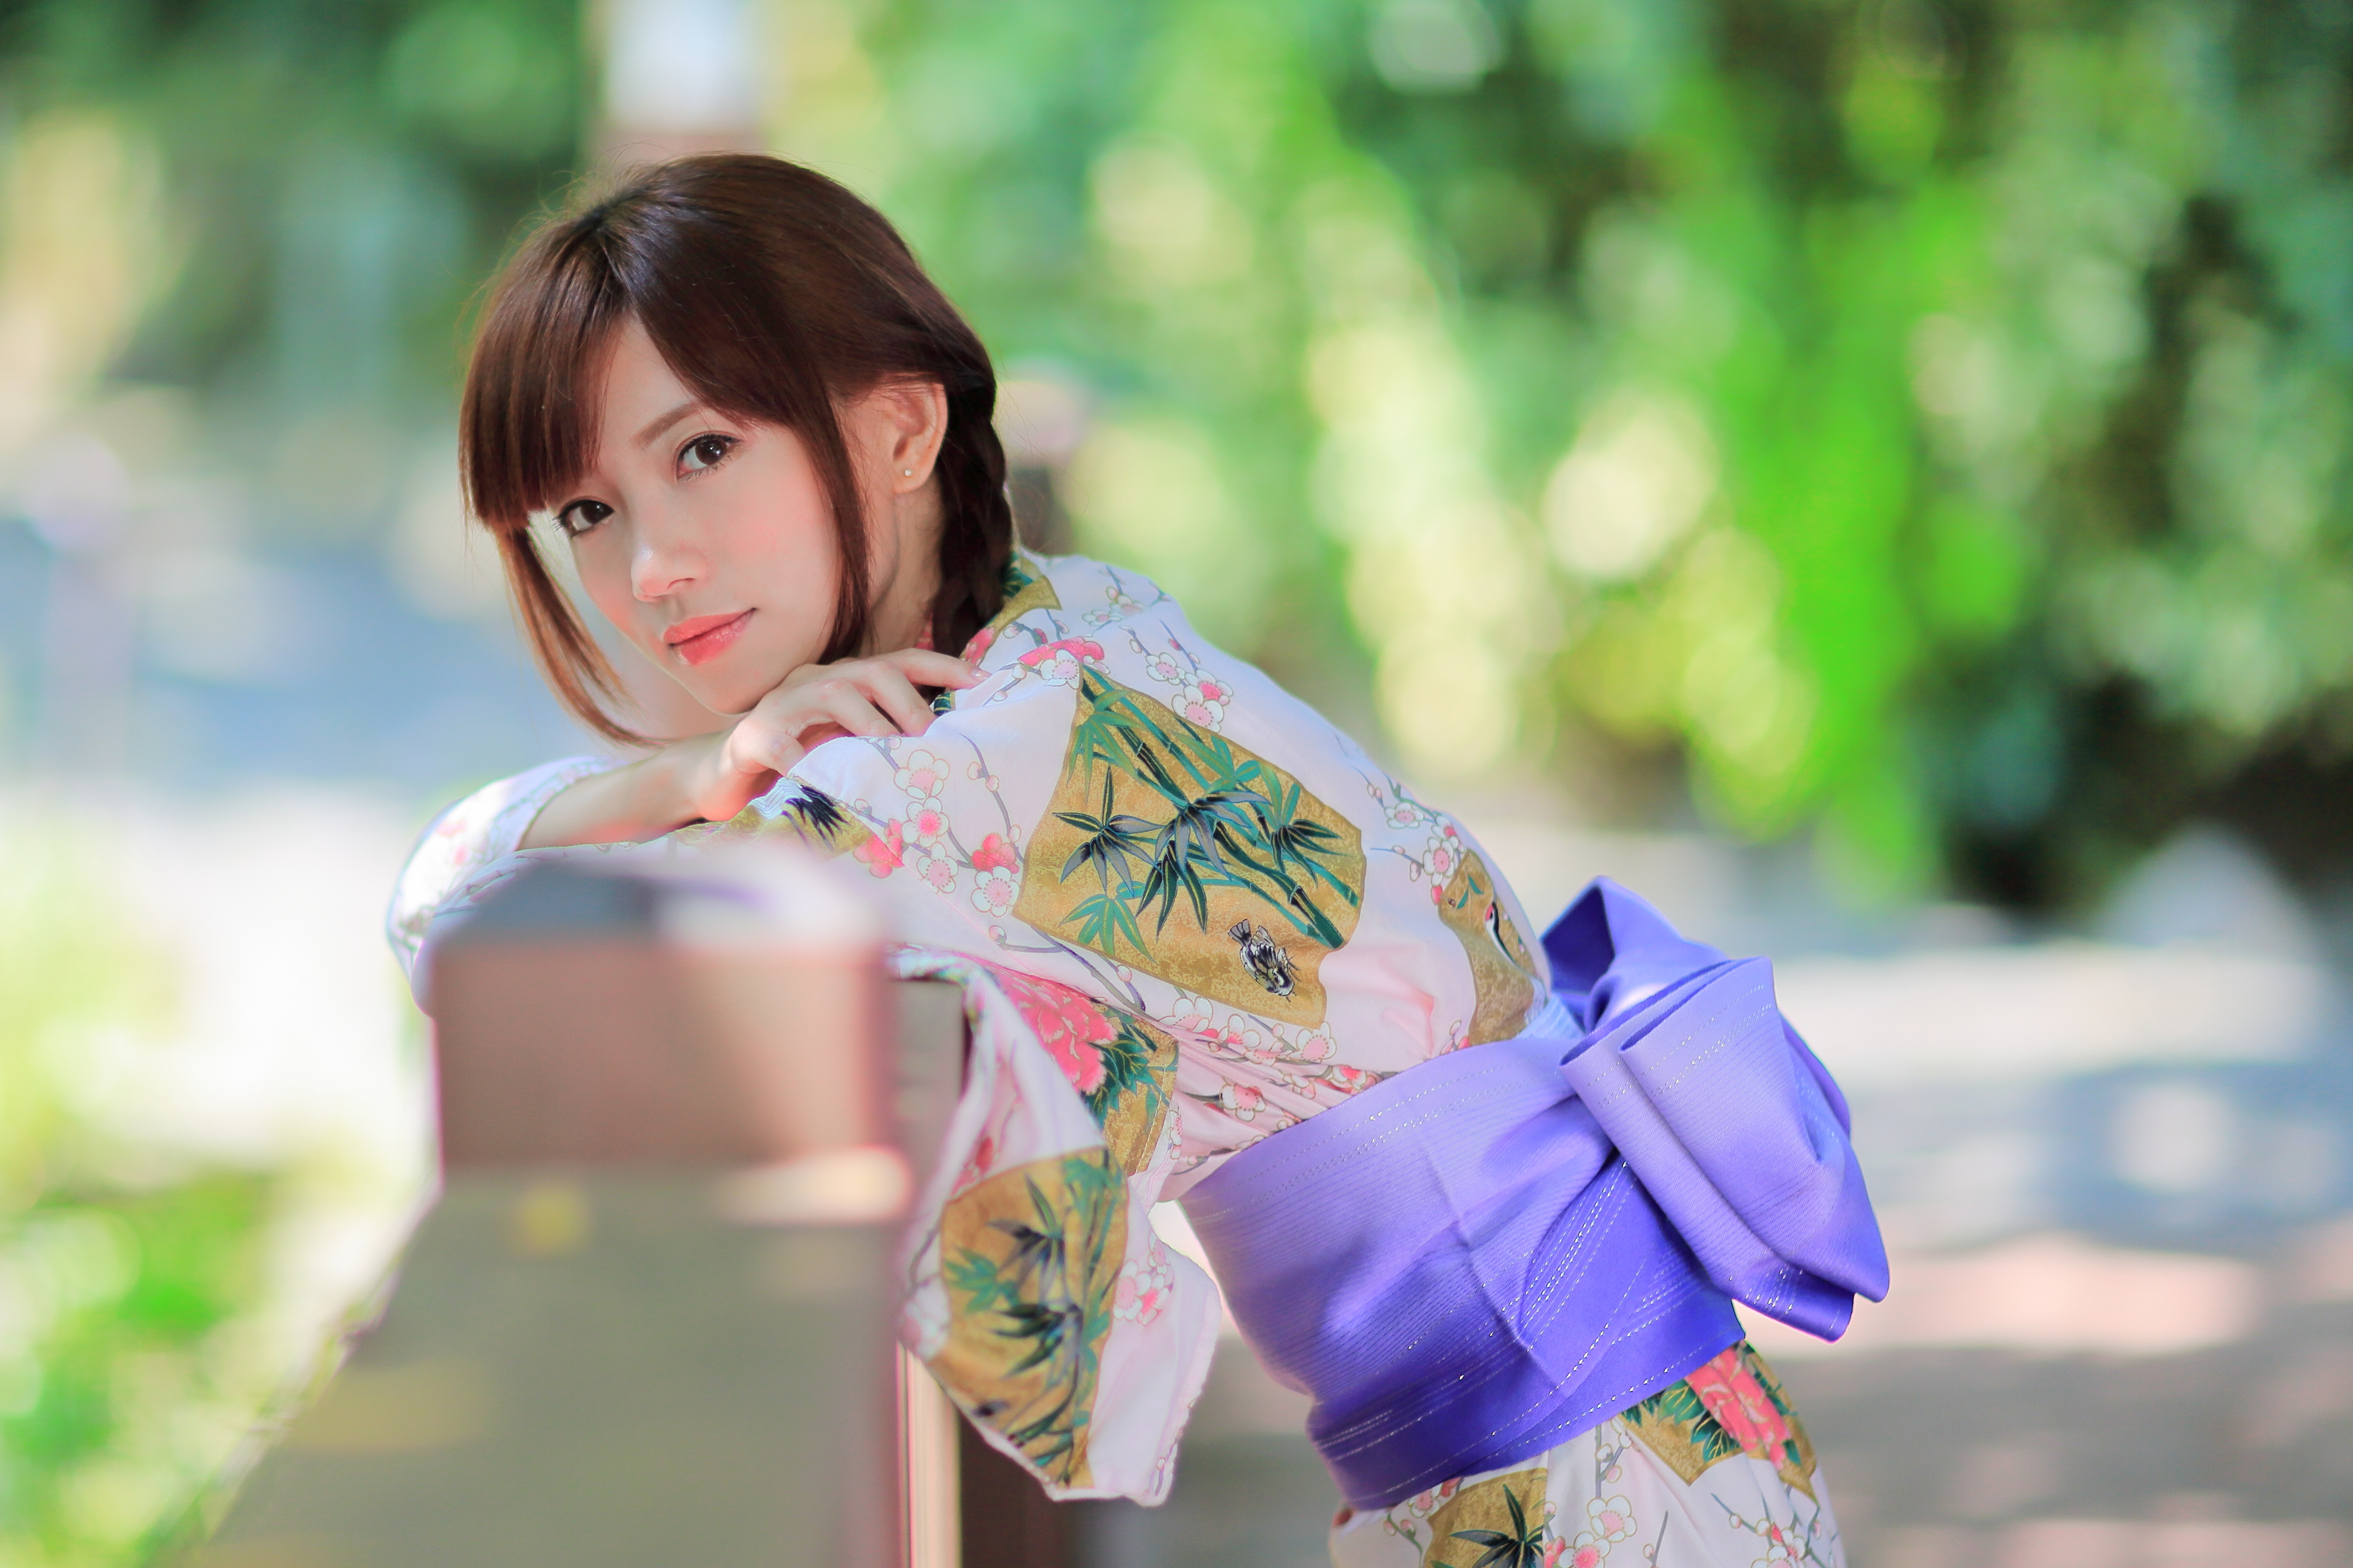 ragazza giapponese hd wallpaper,bellezza,costume,primavera,taglio hime,chimono